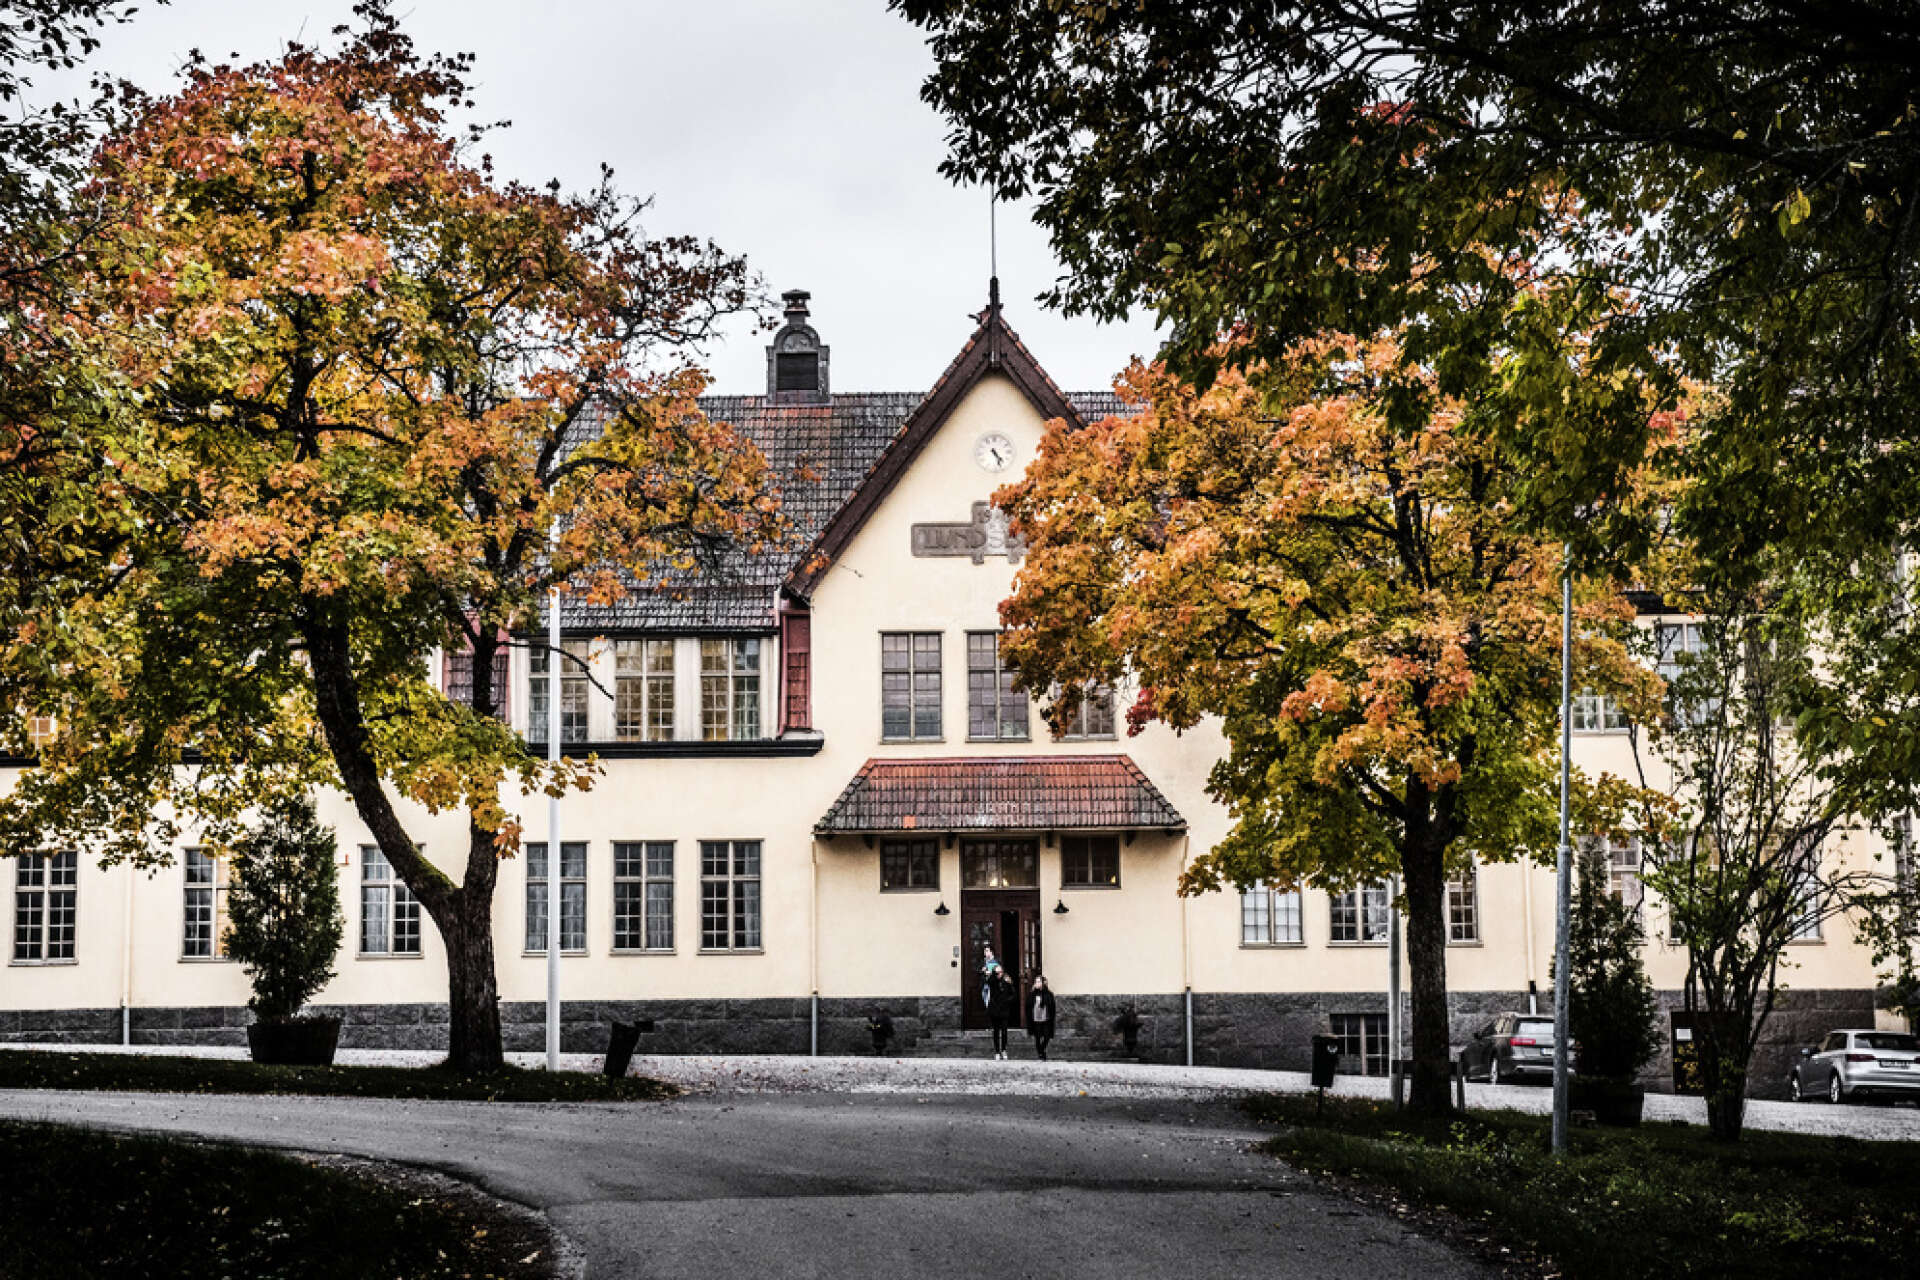 Spridning av shigellabakterier har tvingat internatskolan Lundsberg att stänga i förtid inför jullovet.